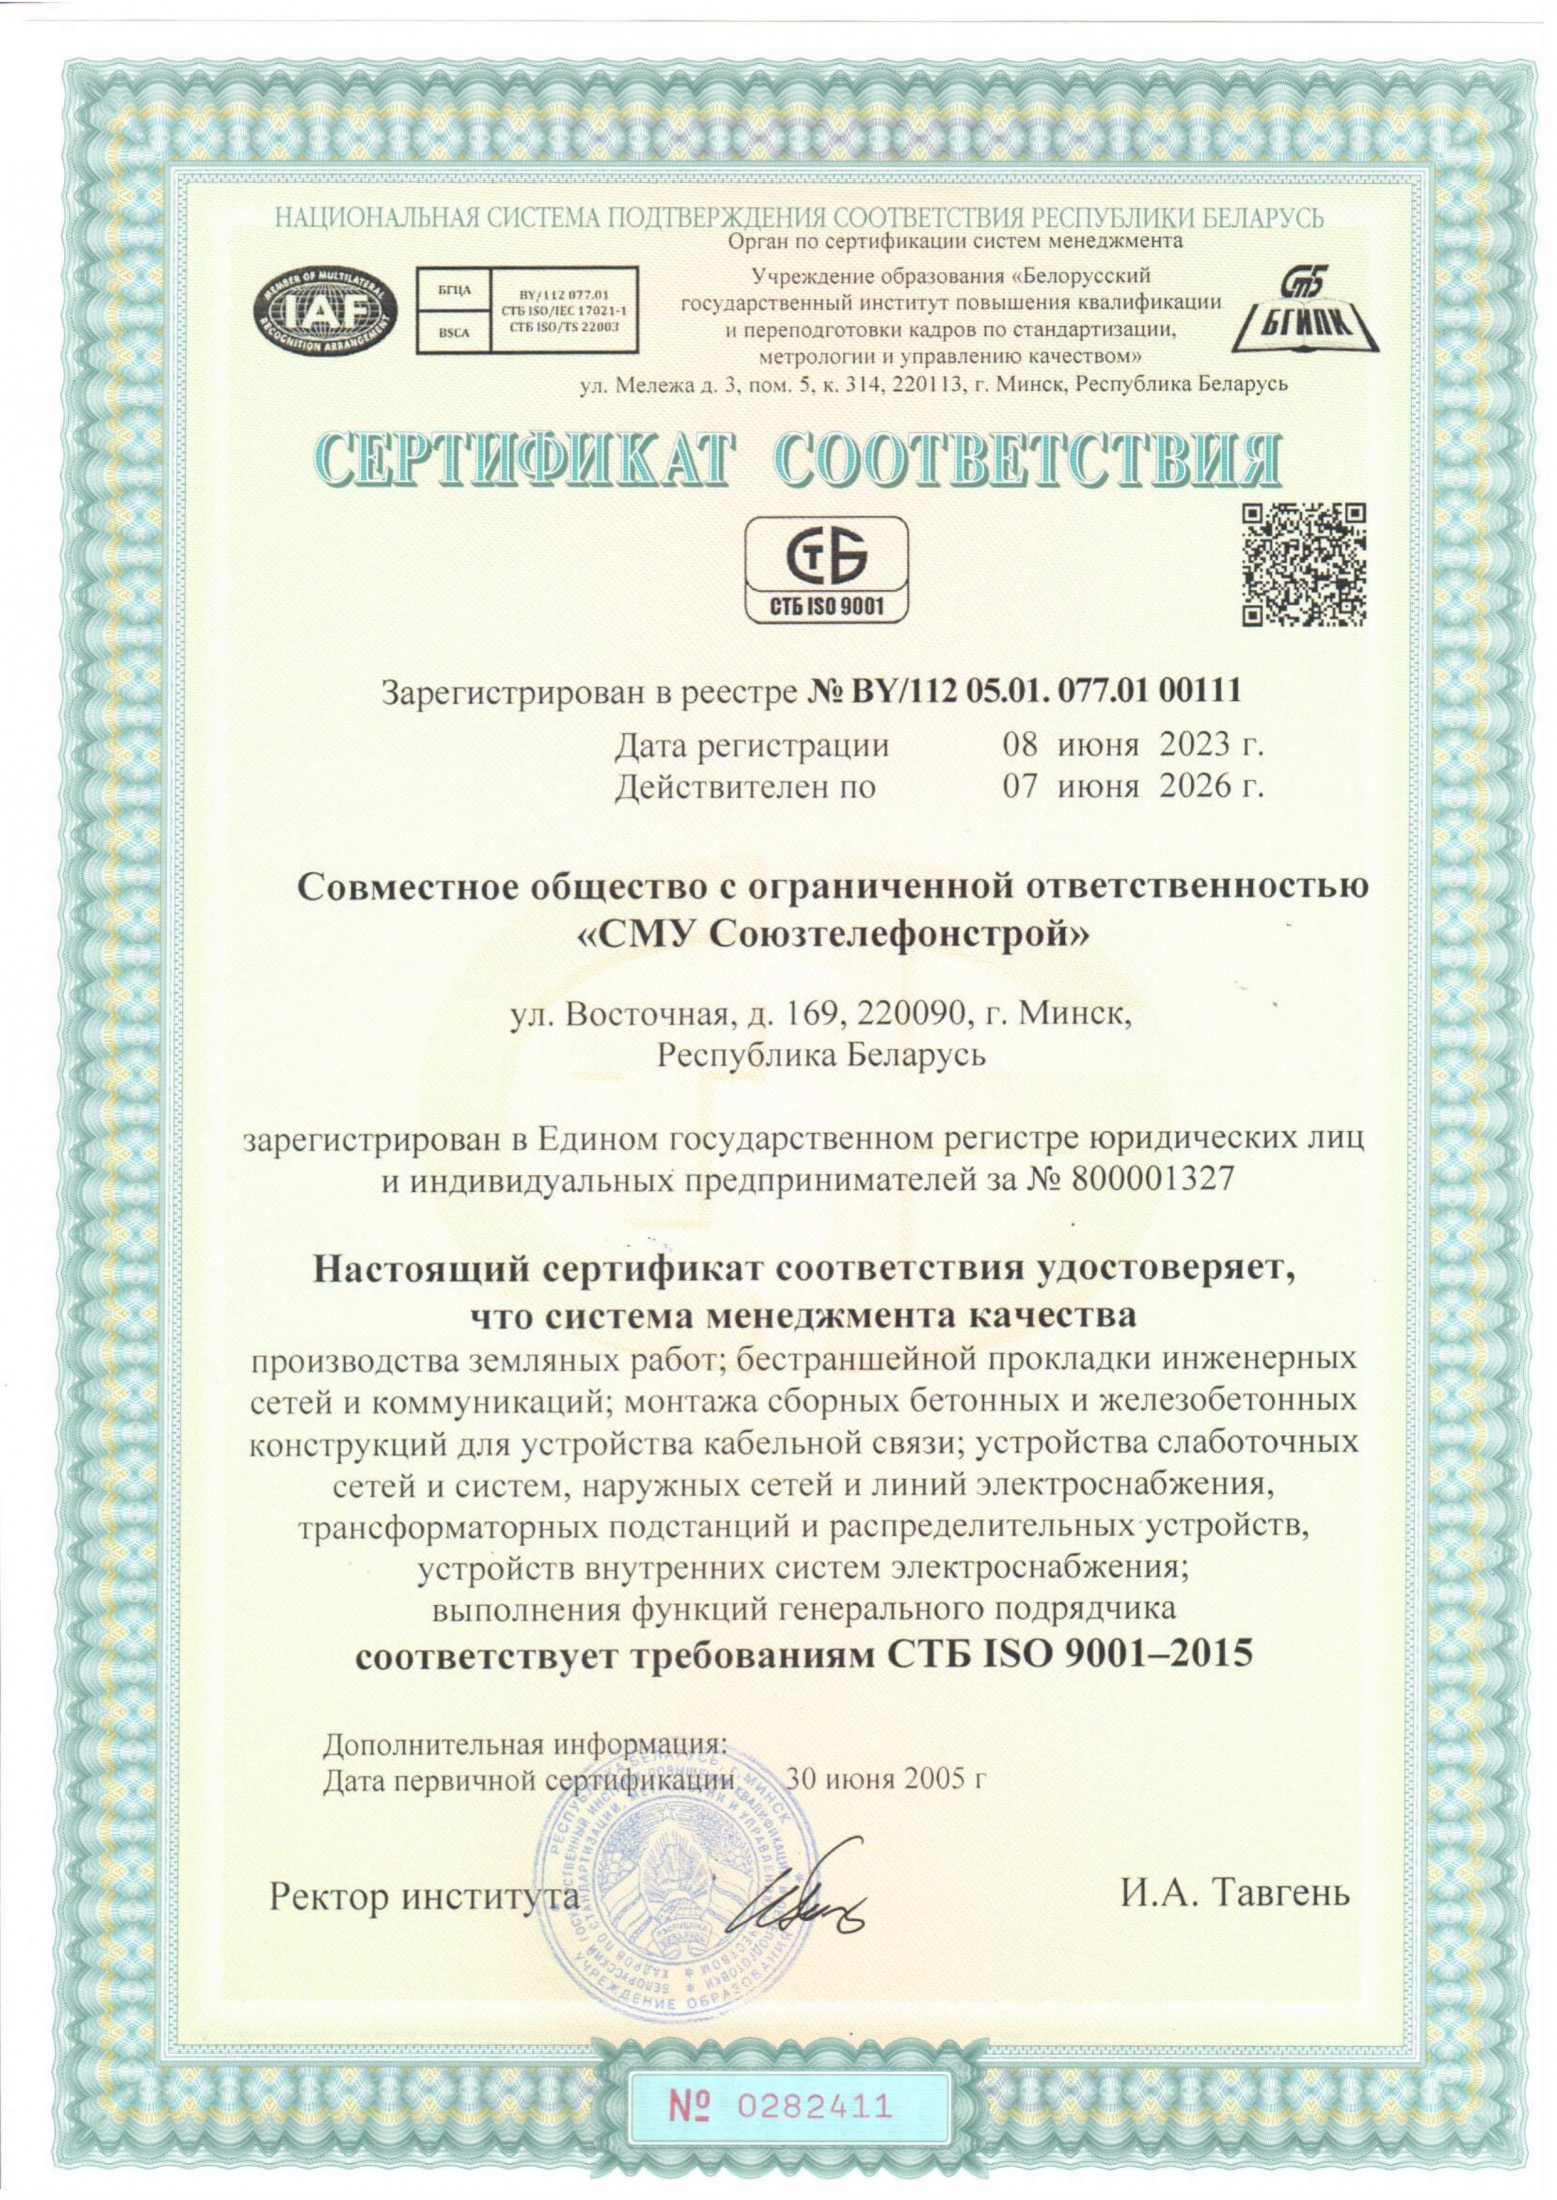  Сертификат соответствия системе менеджмента качества СТБ ISO 9001-2015 